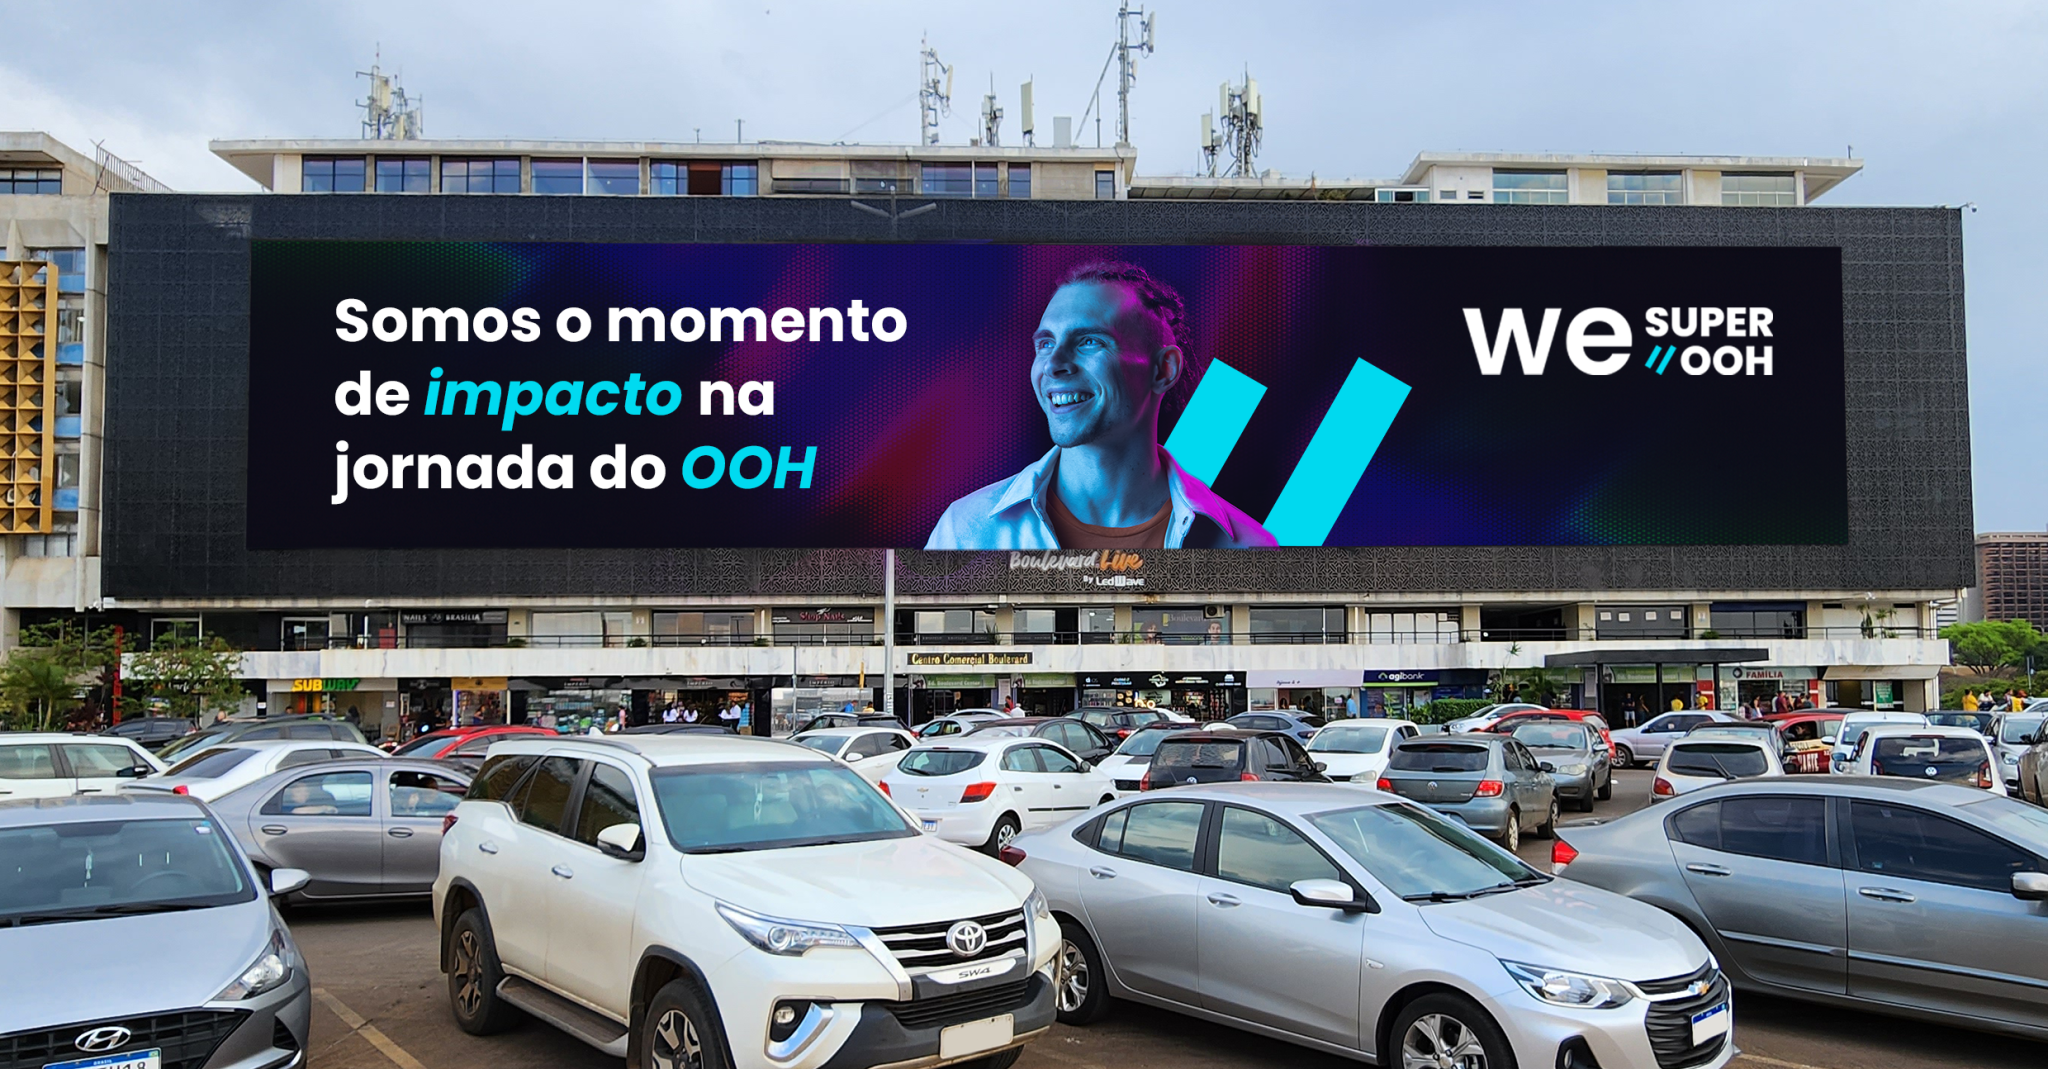 Painel icônico Boulevard.Live, o maior painel de LED da américa latina é We Super OOH, e faz parte do DOOH brasileiro.